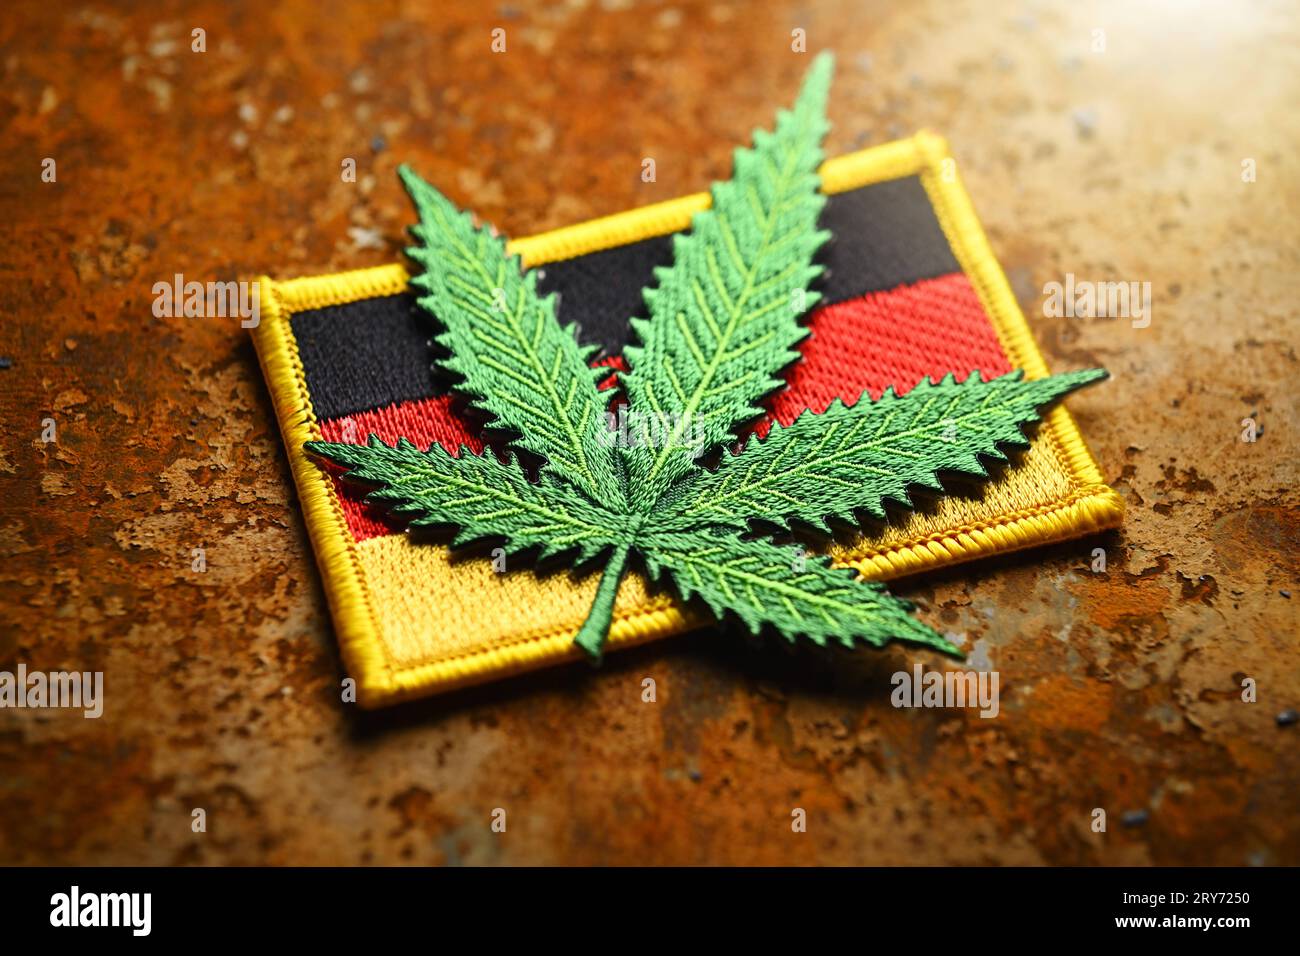 Hanfblatt auf Deutschlandfahne, Cannabisgesetz *** foglia di canapa sulla bandiera della Germania, legge sulla cannabis credito: Imago/Alamy Live News Foto Stock